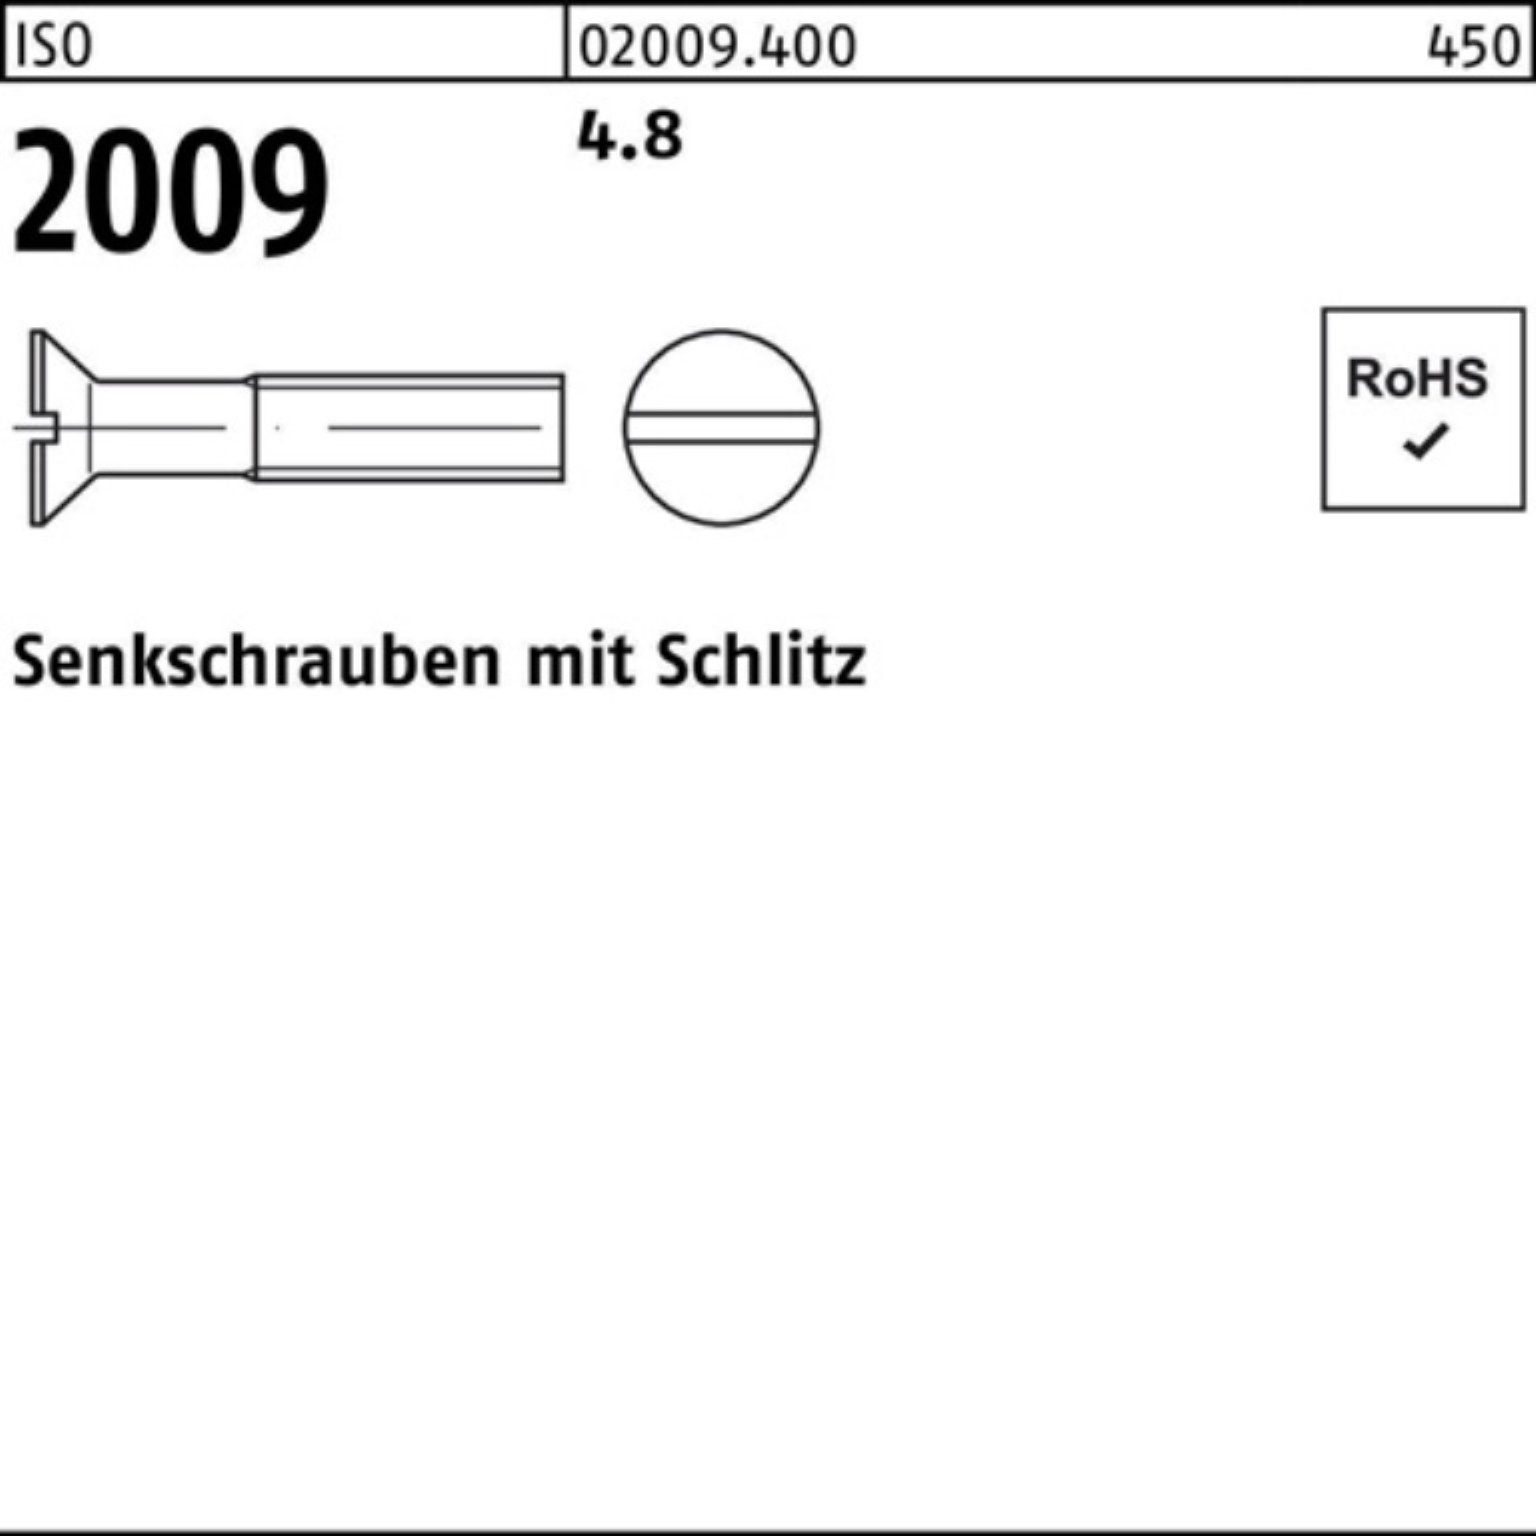 Stück 2009 25 M3x Senkschraube 2 Schlitz 2000er 2000 4.8 ISO Pack Senkschraube Reyher ISO